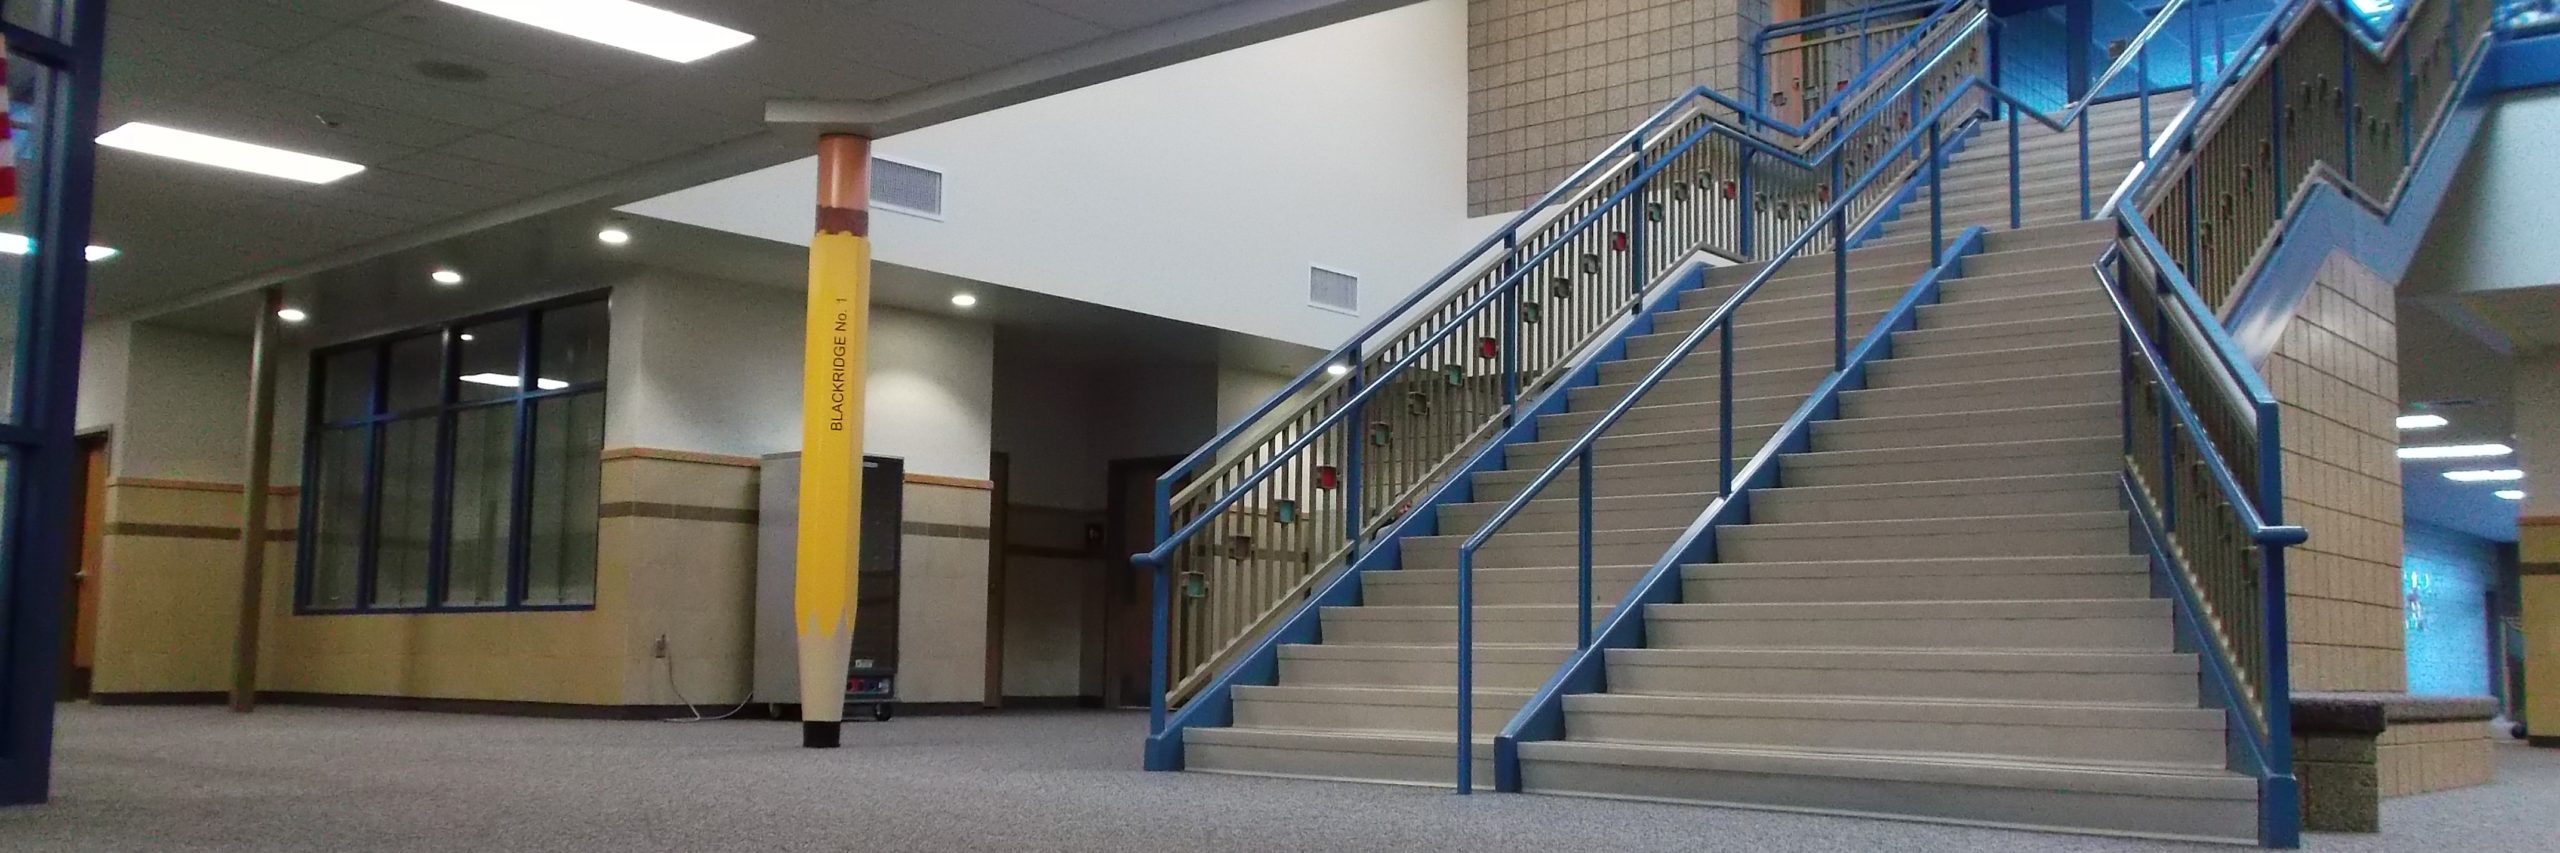 main stairs